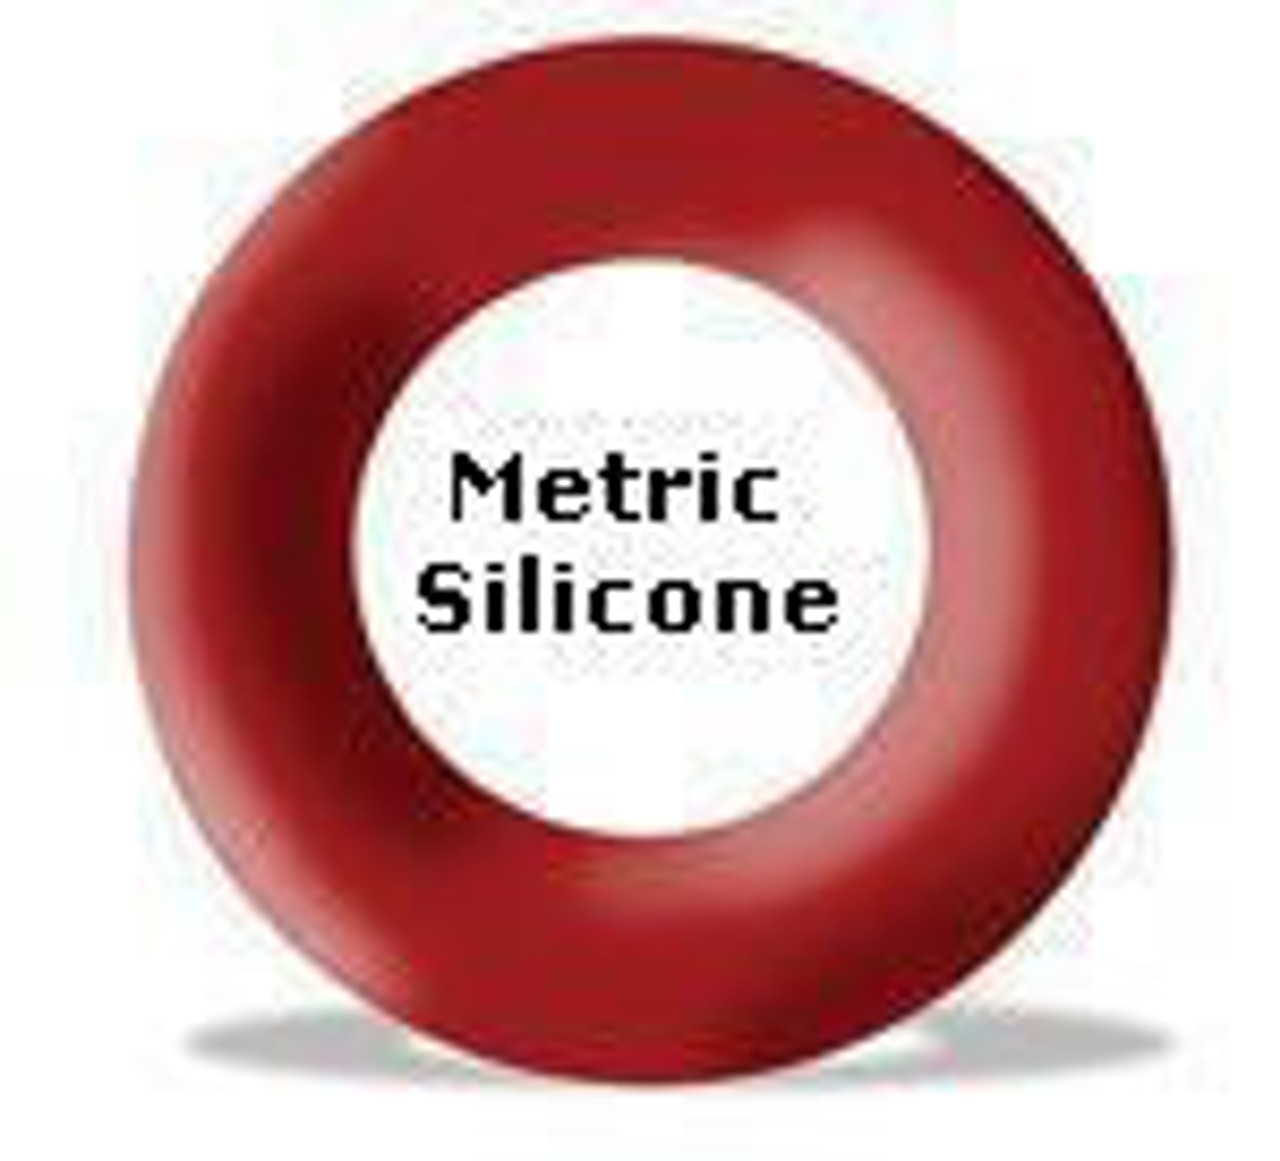 Silicone O-rings 31.12 x 5.33mm Minimum 5 pcs